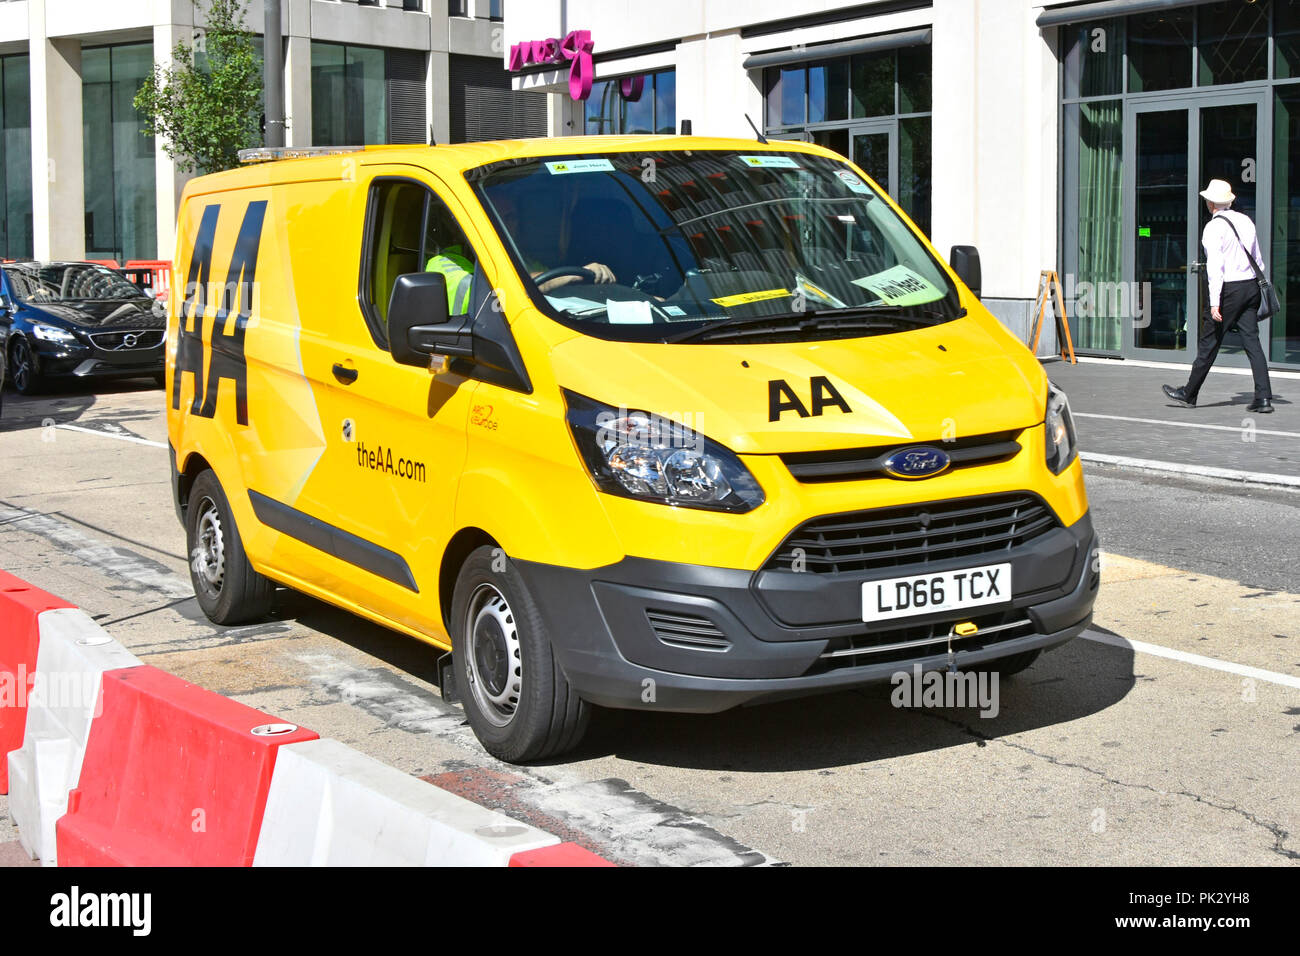 Ford Transit van & Treiber mit AA-Logo auf gelb Aufschlüsselung van Fahren entlang in die Innenstadt Straße funktioniert, Stratford, Newham East London England Großbritannien Stockfoto